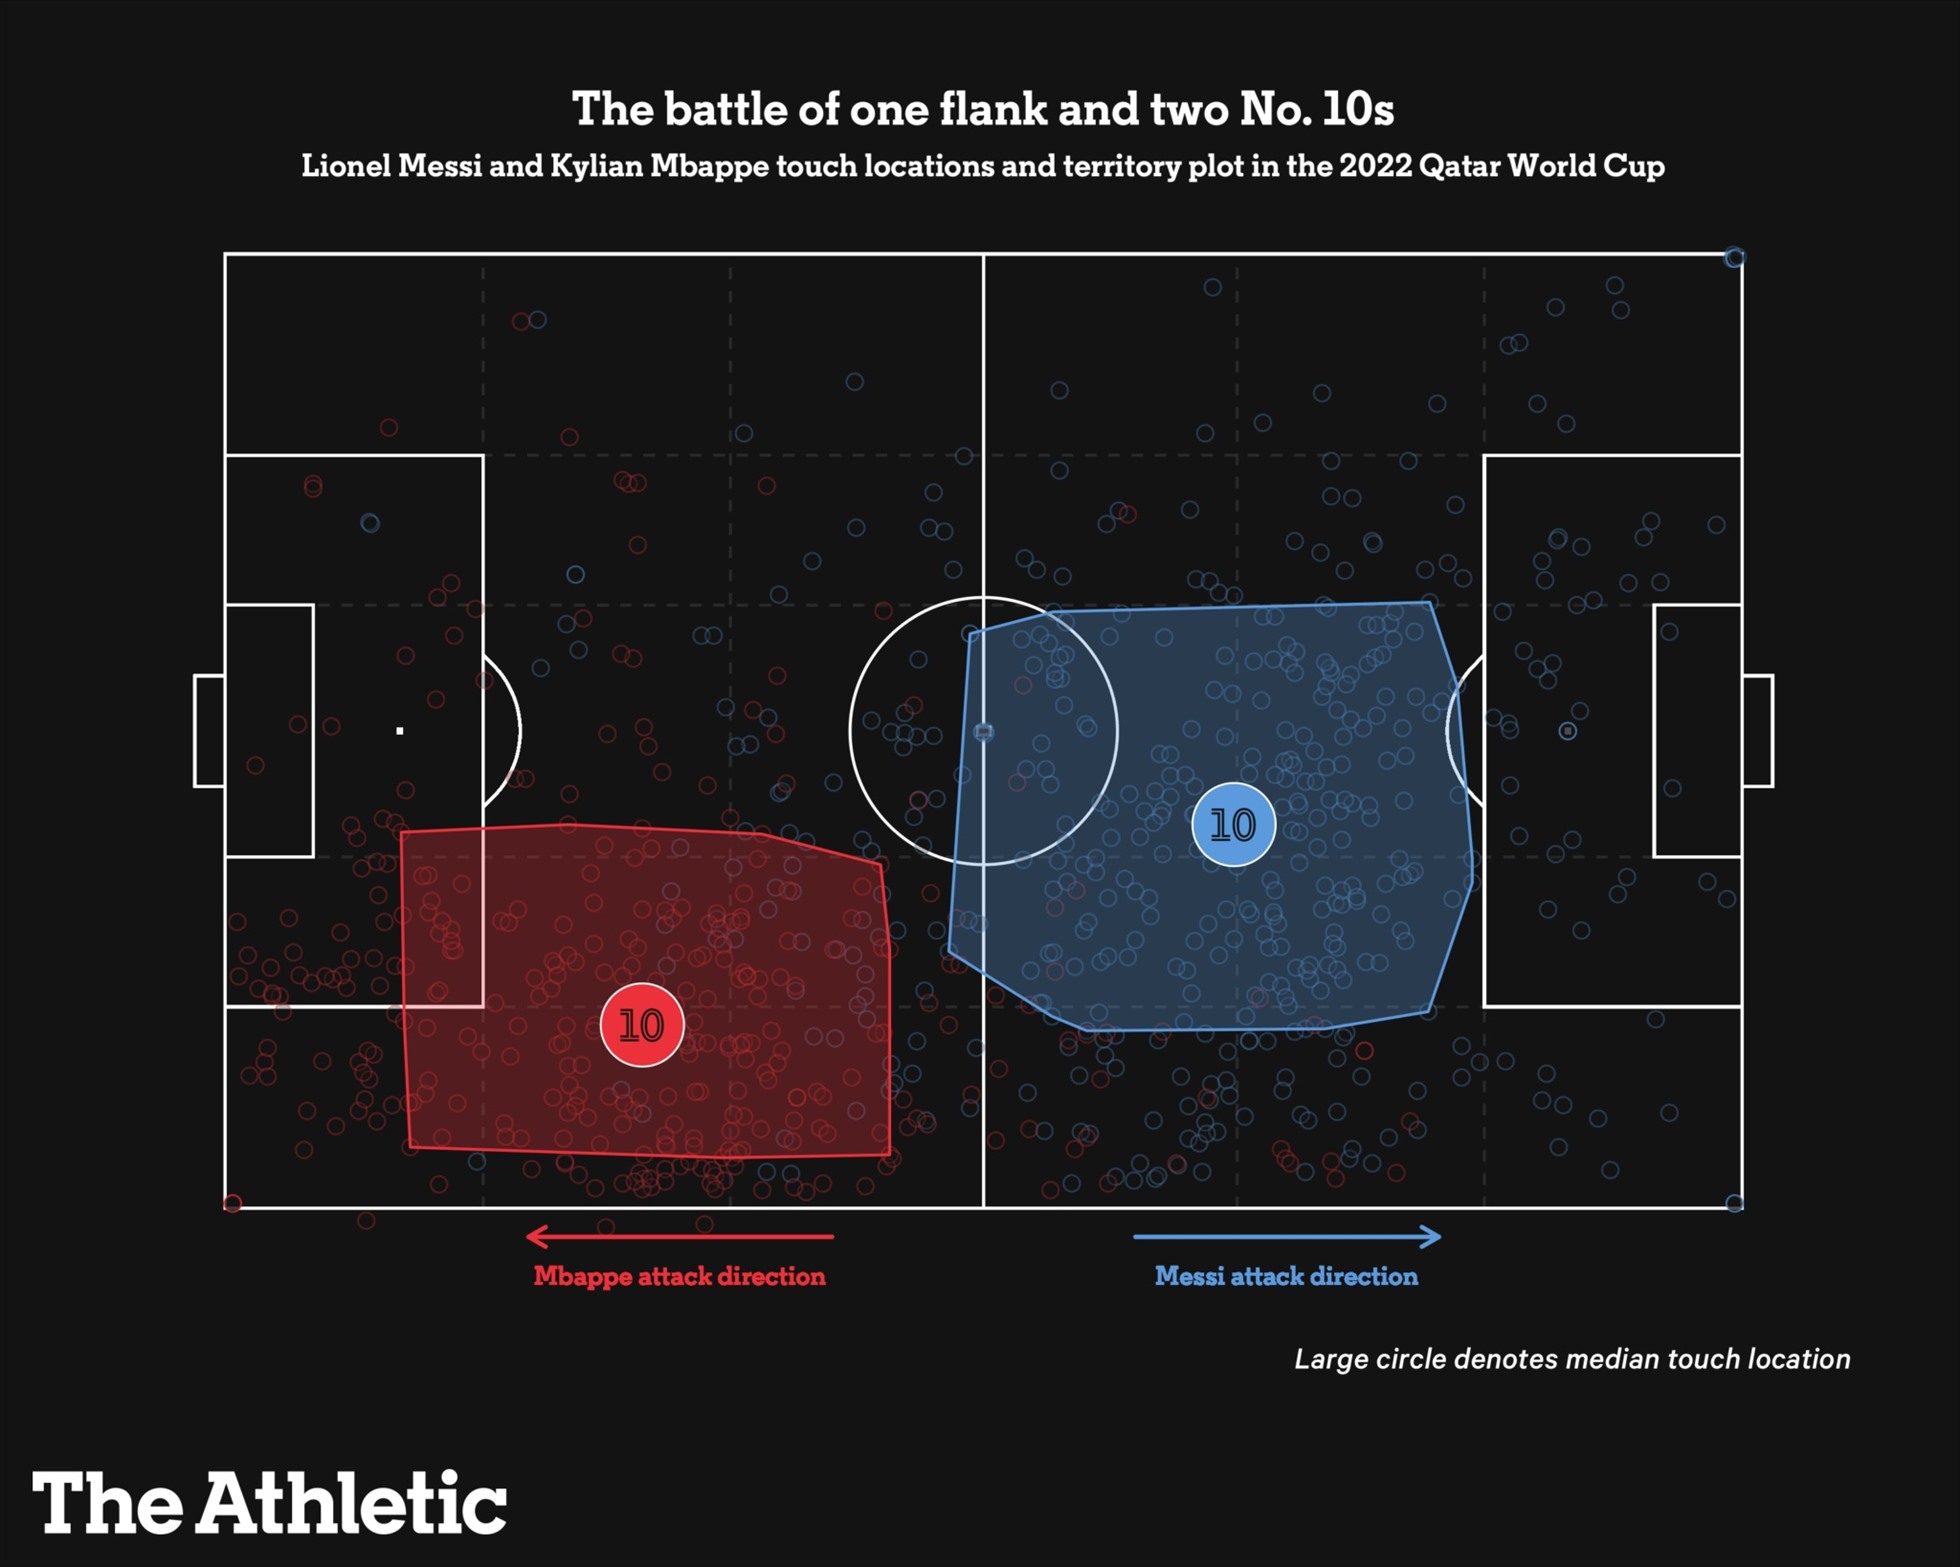 Điểm chạm bóng và khoảng sân hoạt động chủ yếu của Mbappe (xanh) và Messi (đỏ). Ảnh: The Athletic